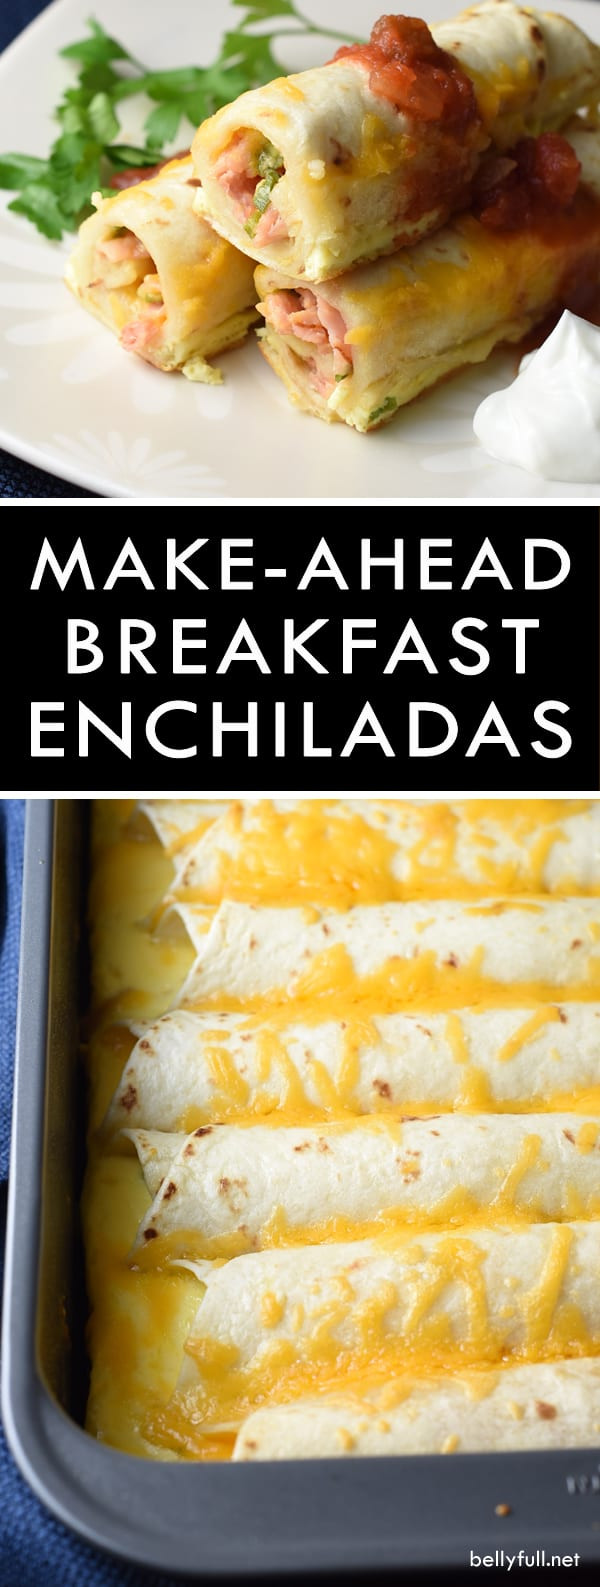 Make Enchiladas Ahead Of Time
 Make Ahead Breakfast Enchiladas